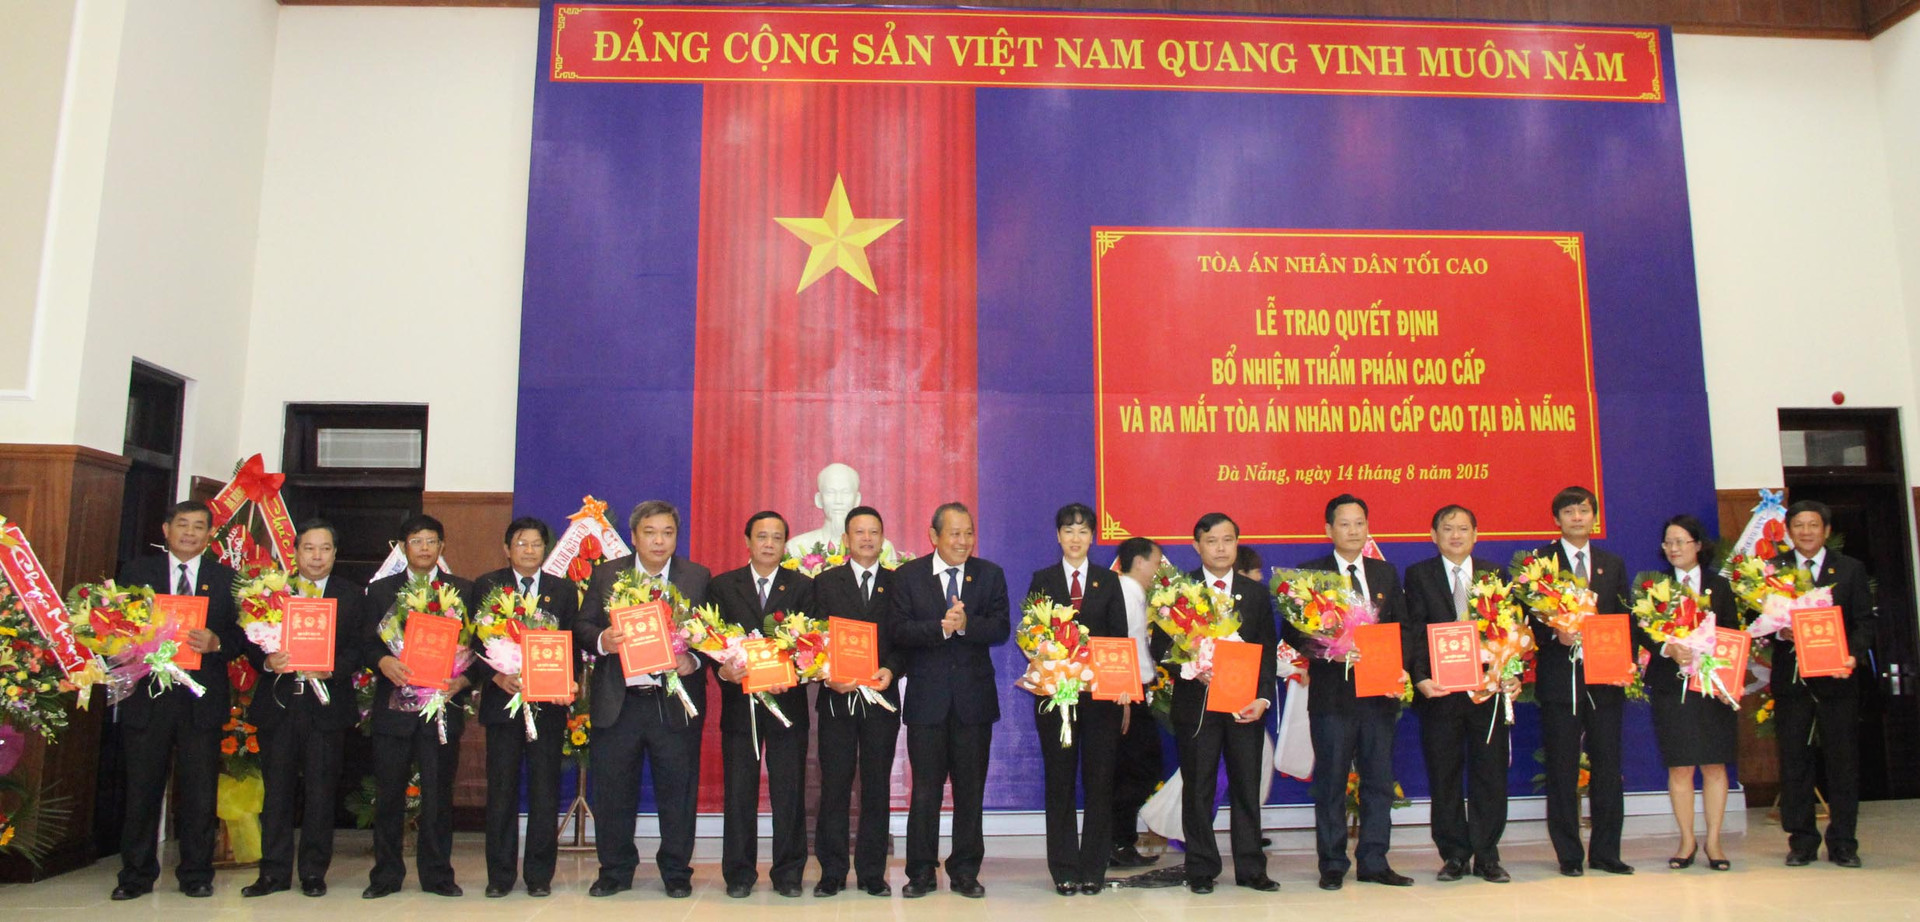 Trao quyết định bổ nhiệm Thẩm phán cao cấp và ra mắt TAND cấp cao tại Đà Nẵng